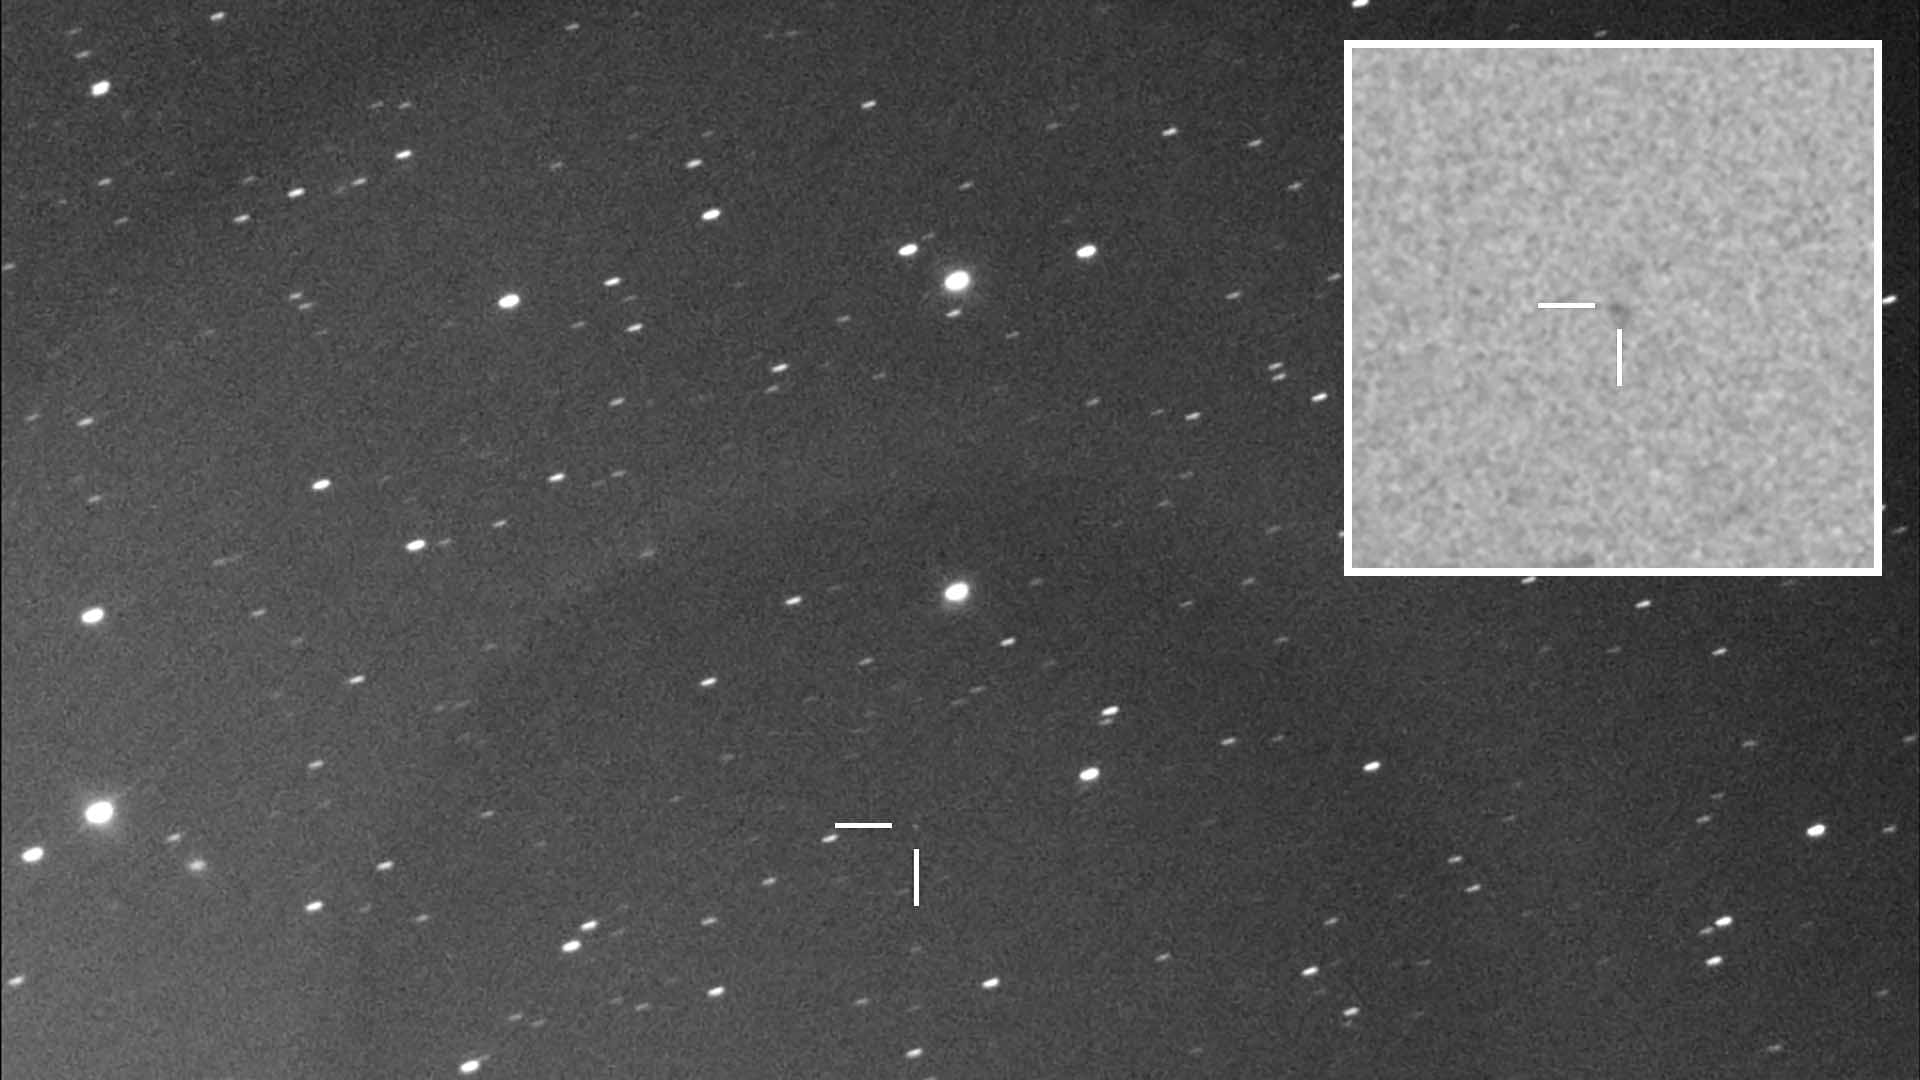 Comet 2024 A3 - Vikky Jerrilyn